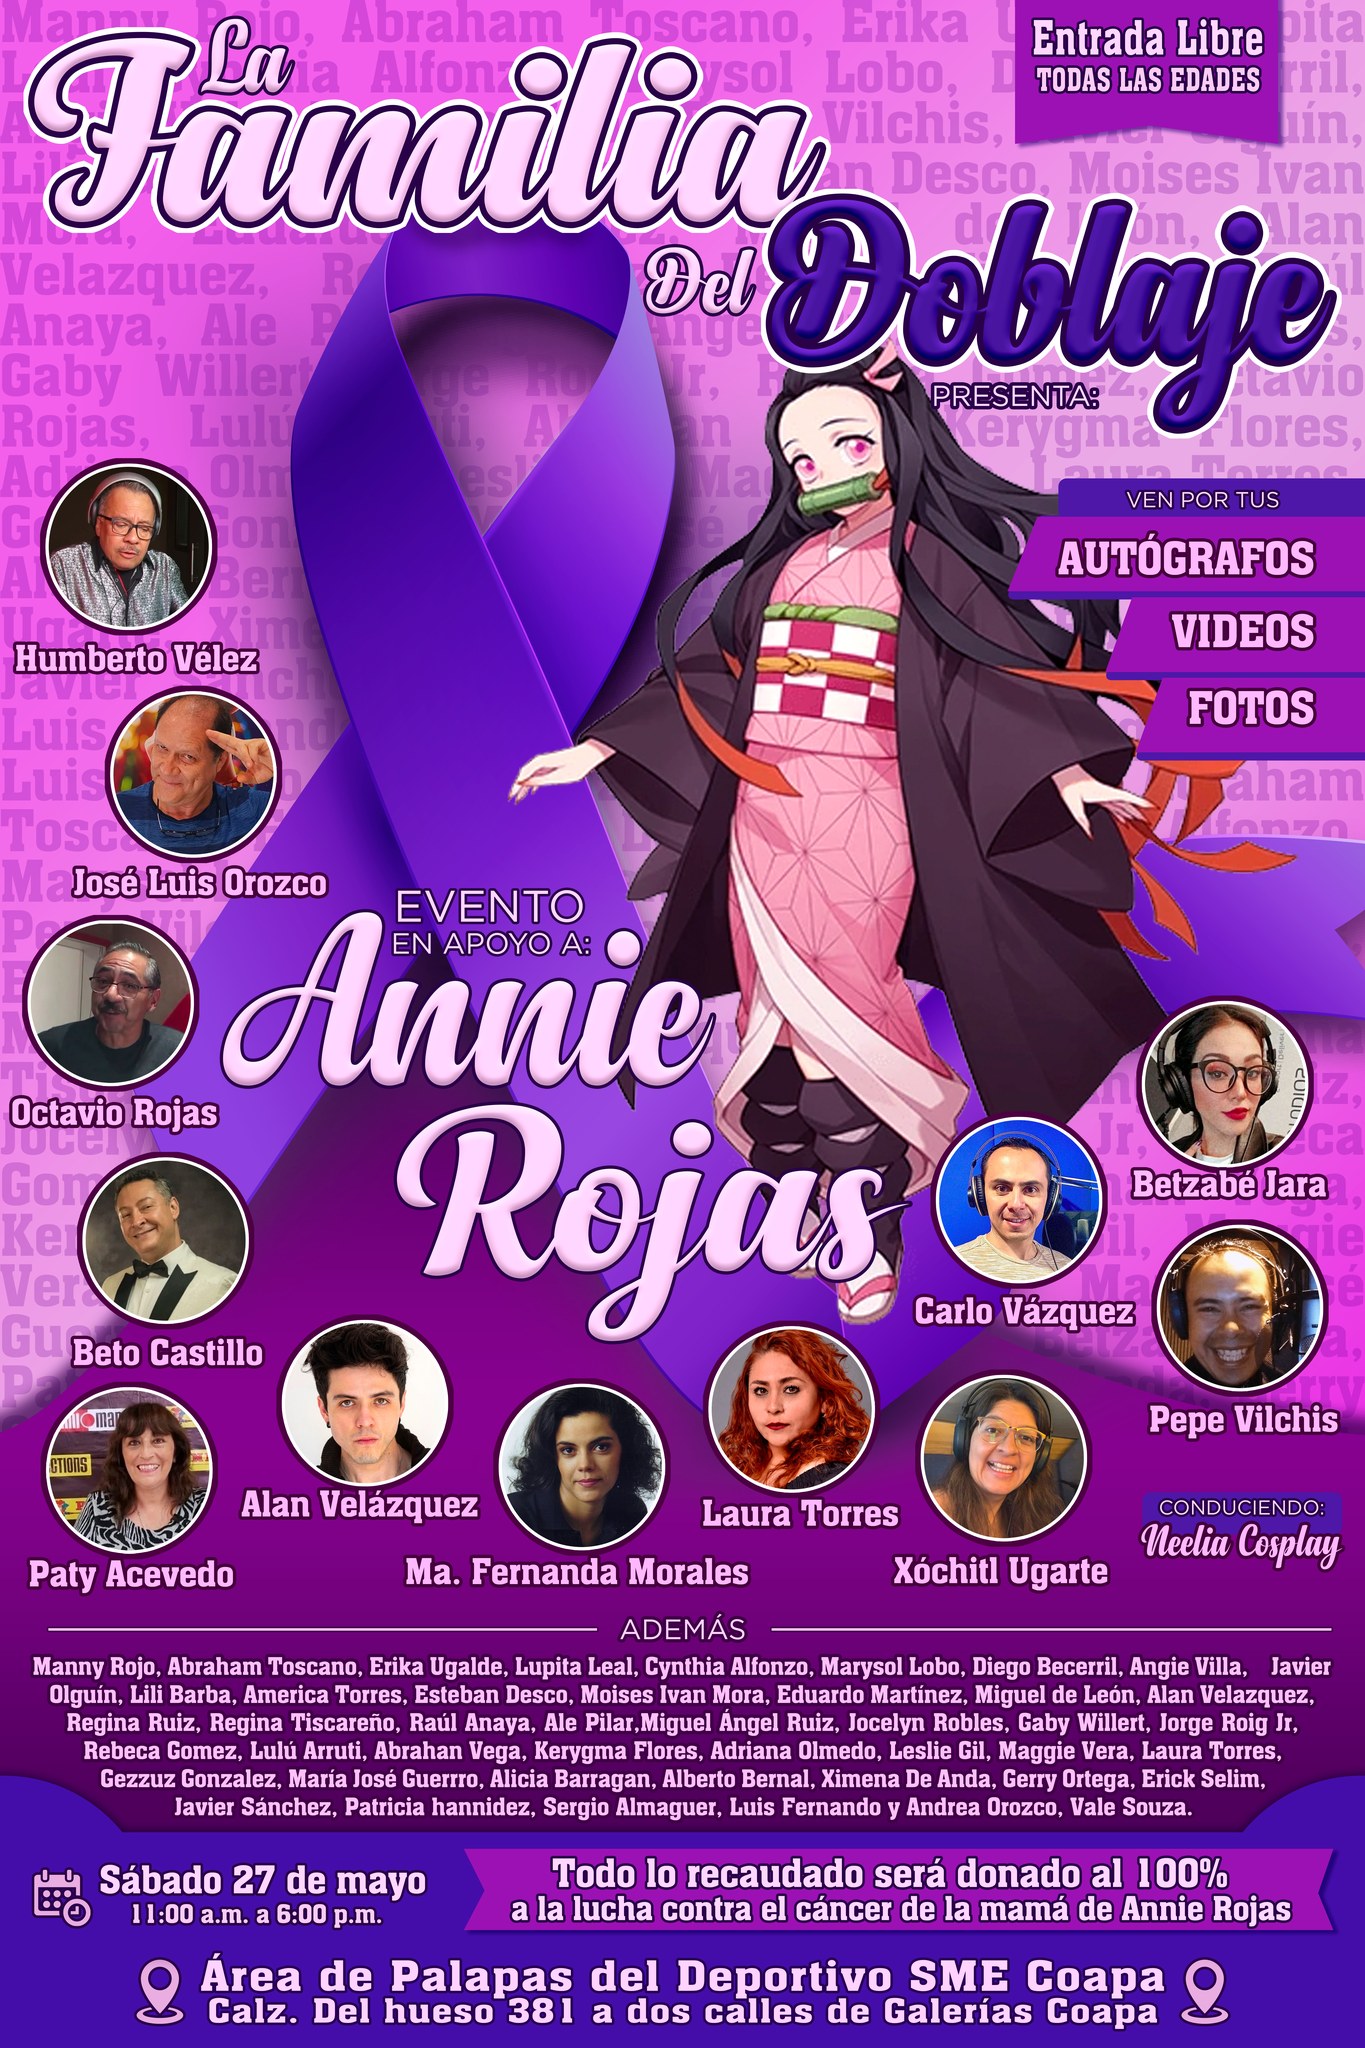 ¡Ñoños Unidos! Diversos fandoms se unen para apoyar a Annie Rojas 8